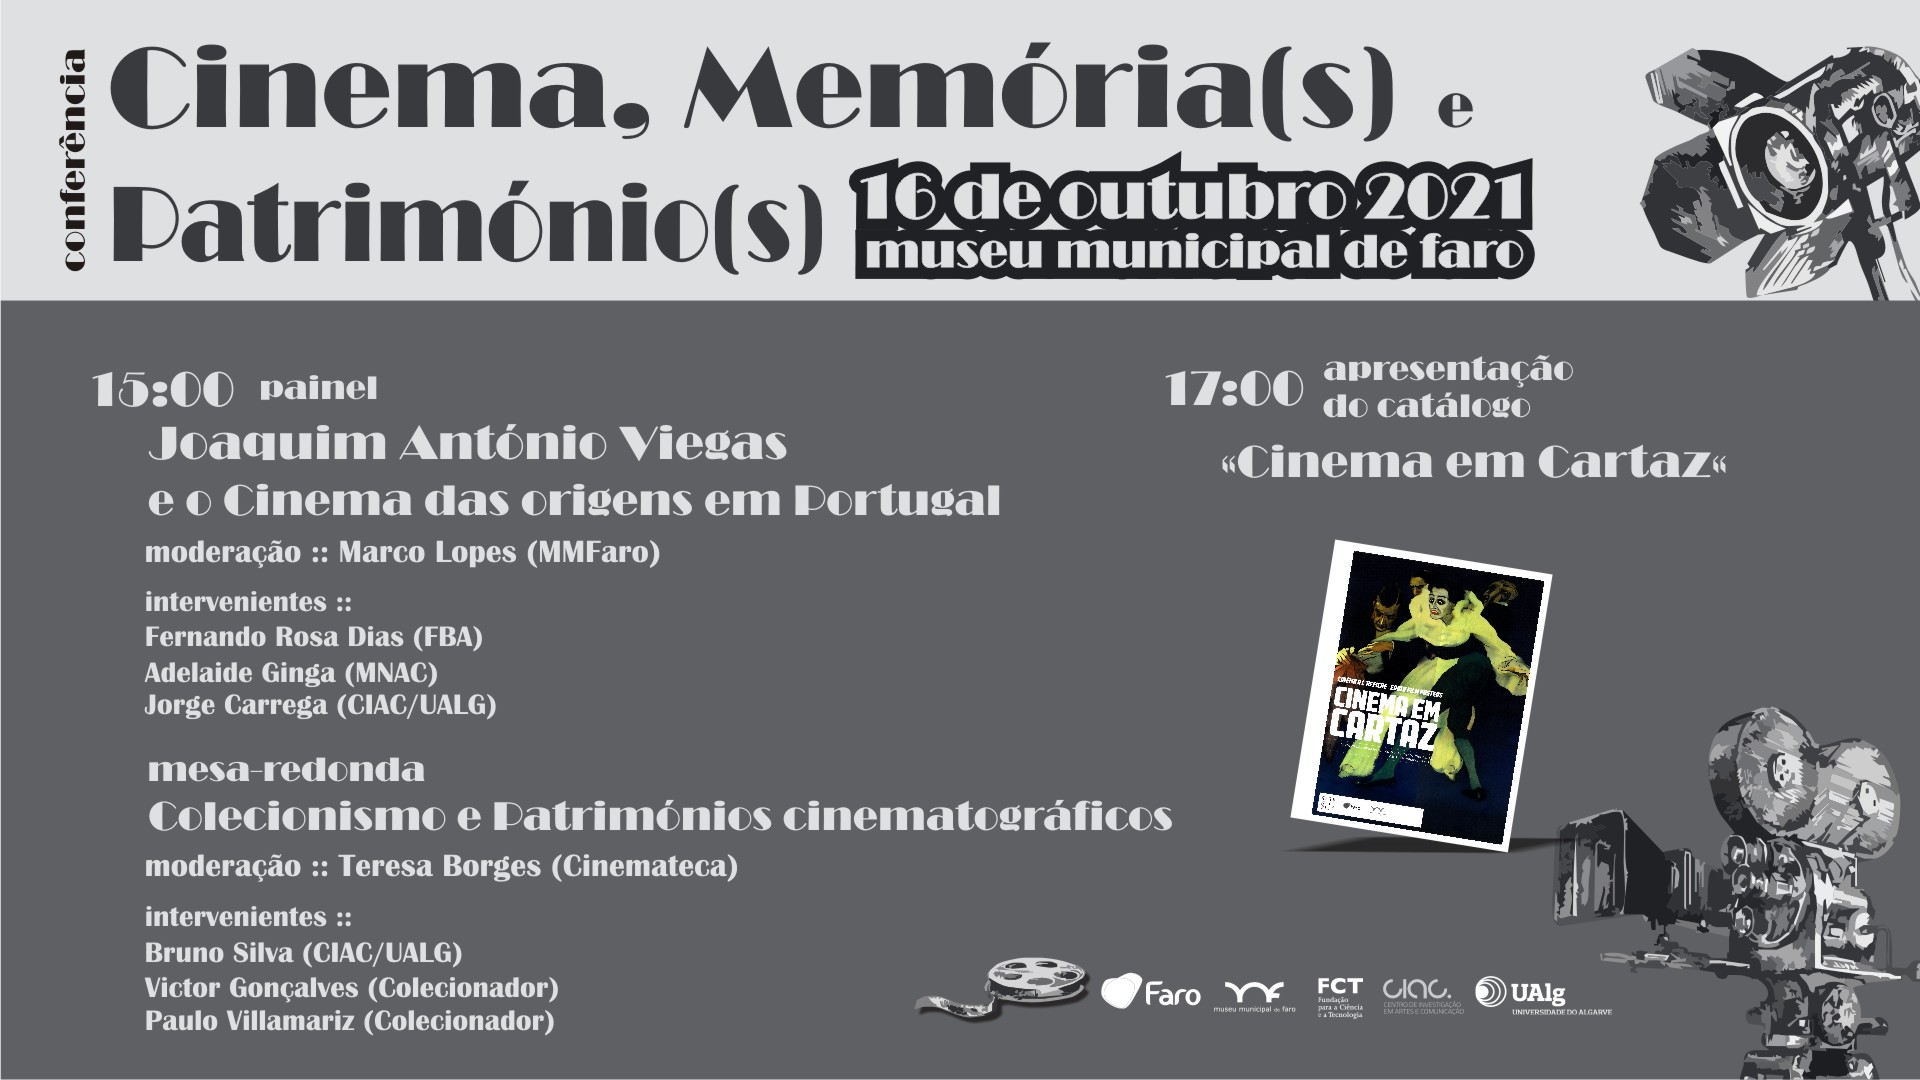 Conferência: Cinema, Memória(s) e Património(s)